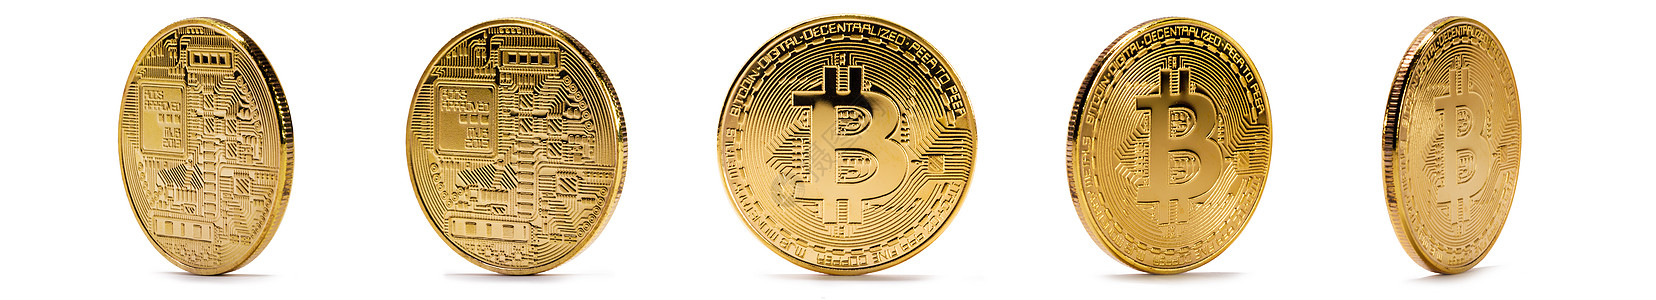 金币与比特币标志隔离白色背景上套带有比特币标志的金币图片